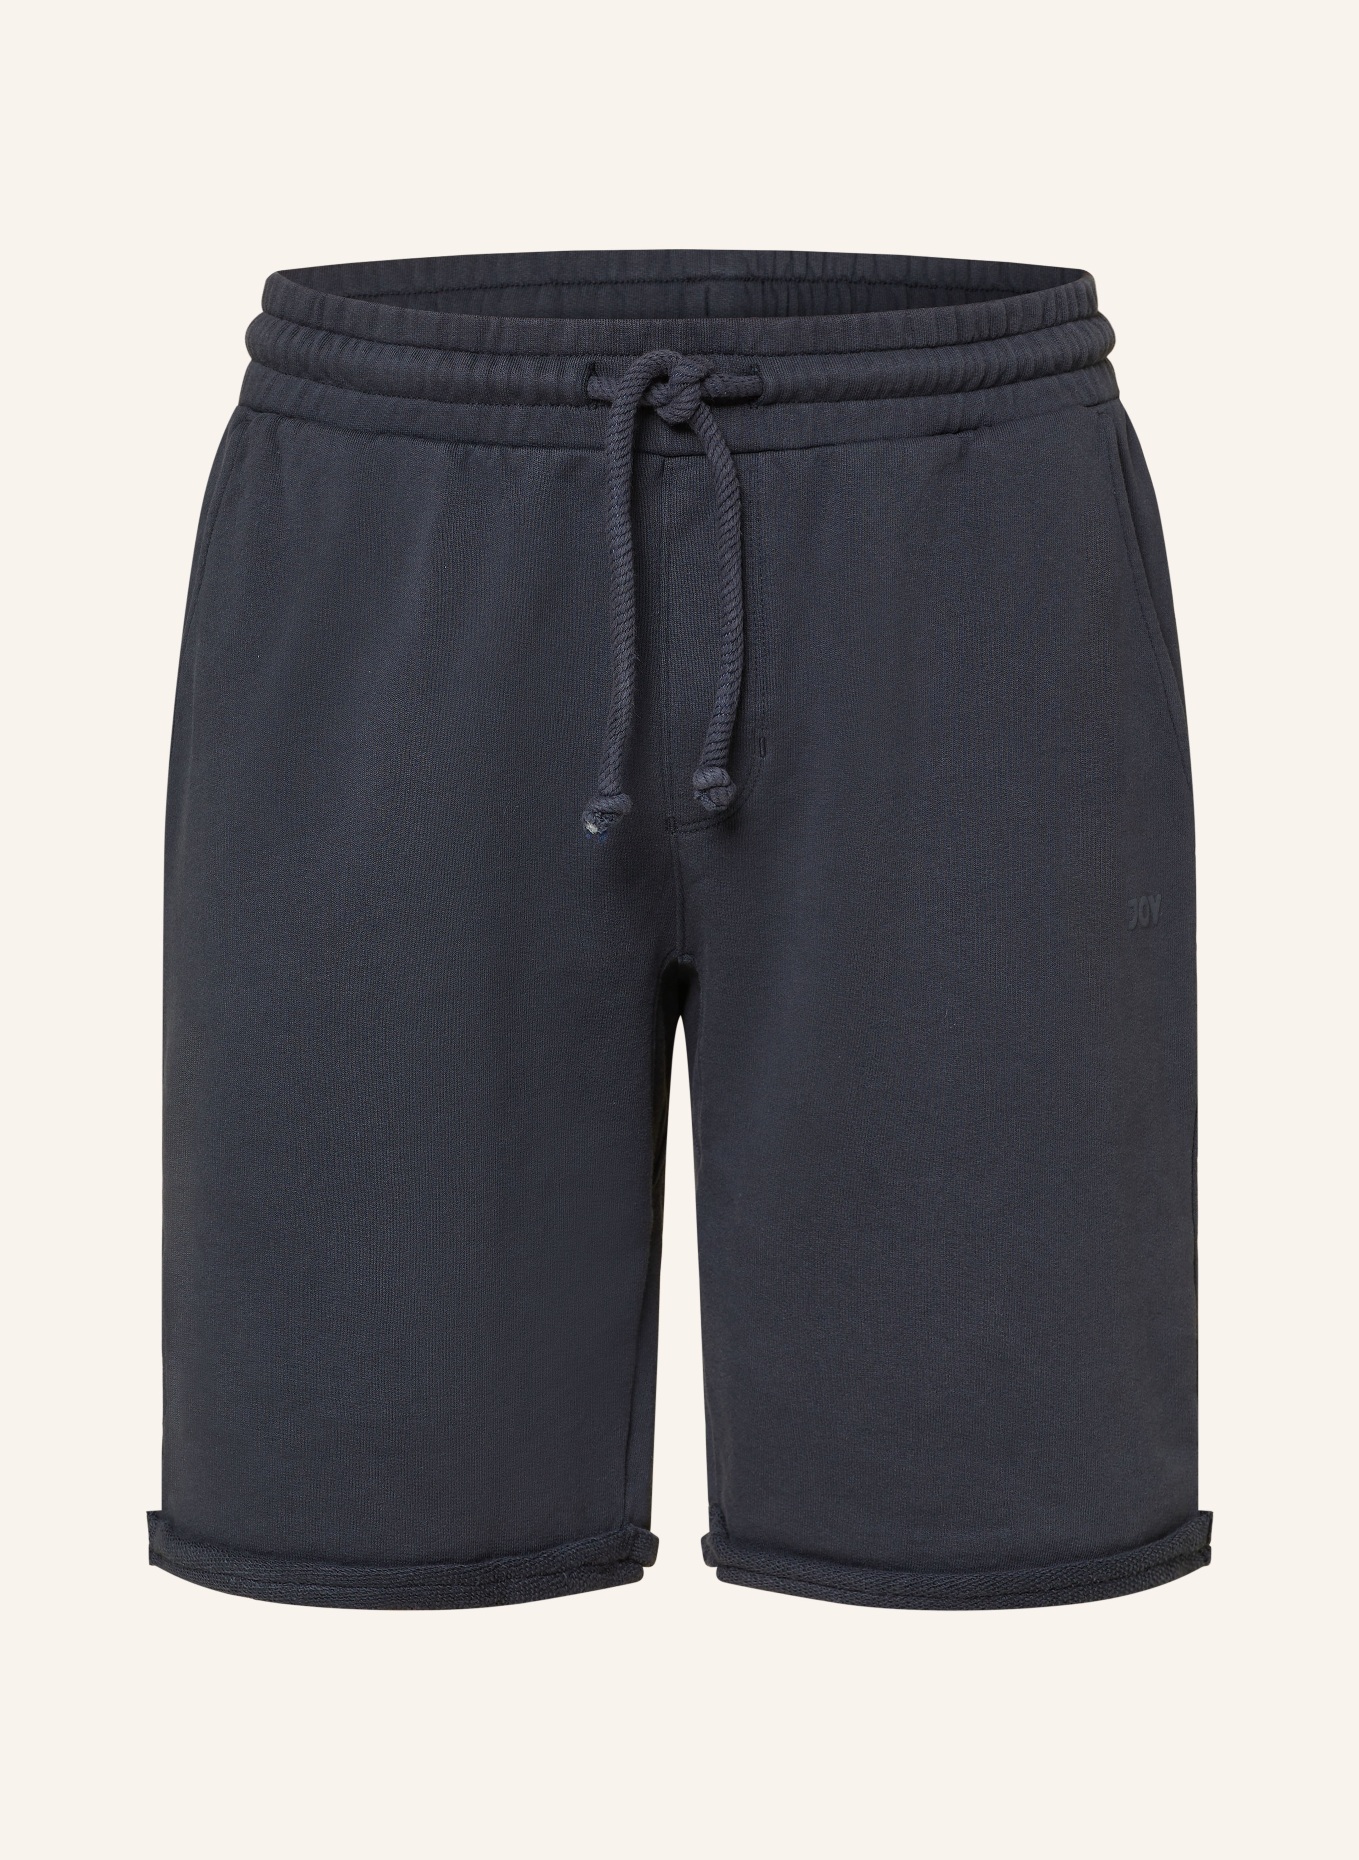 JOY sportswear Sweat shorts, Color: DARK BLUE (Image 1)